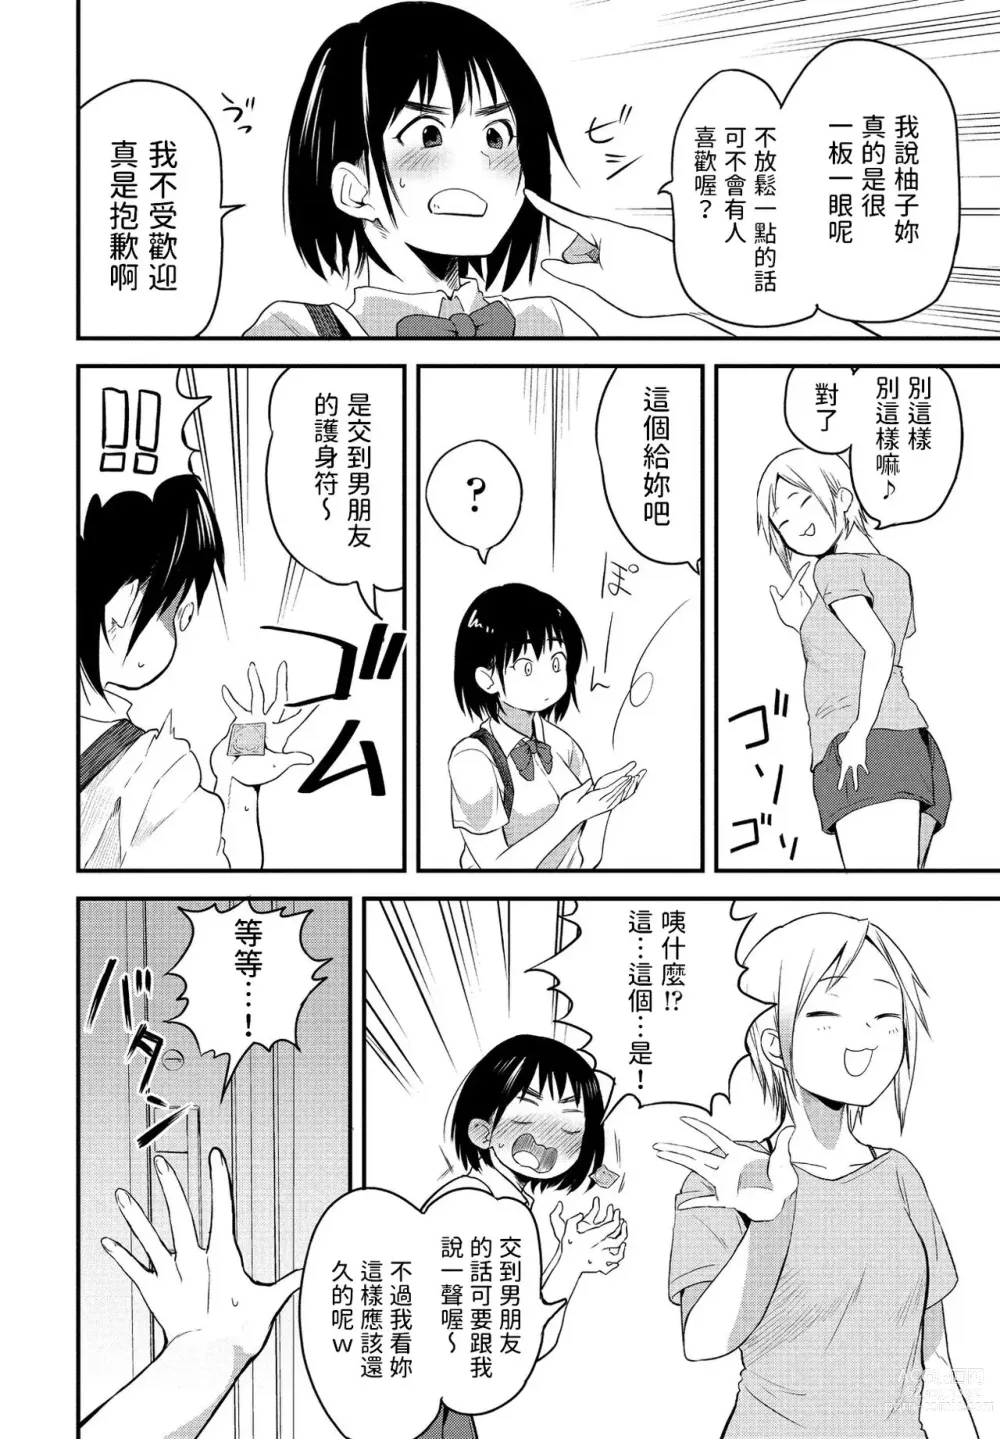 Page 2 of manga Massugu na Kimi ga Suki